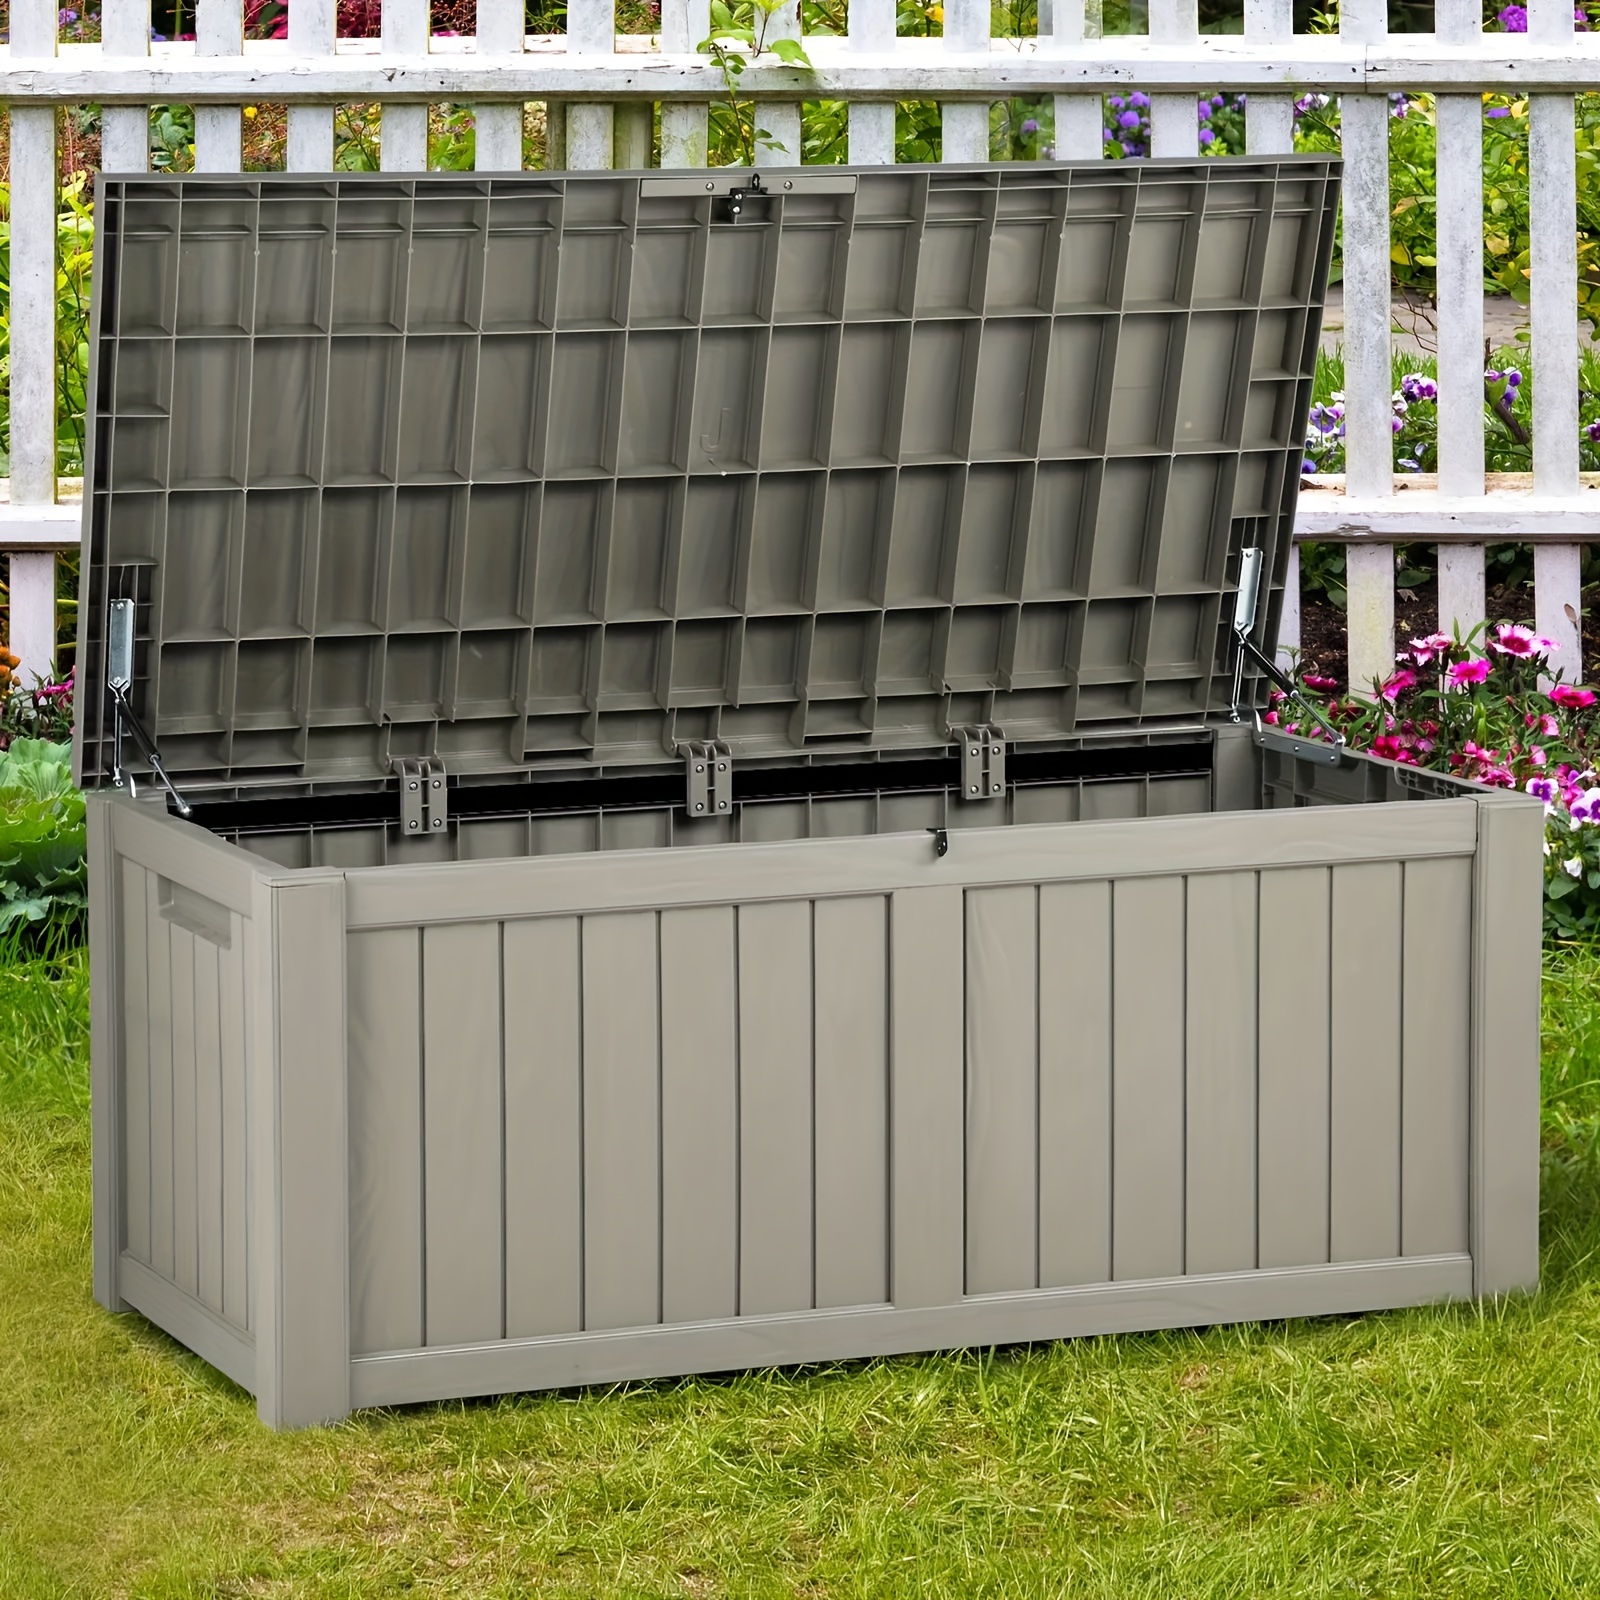 

Quoyad 120 Gallon Resin Patio Deck Box Outdoor Storage Container Waterproof Garden Box